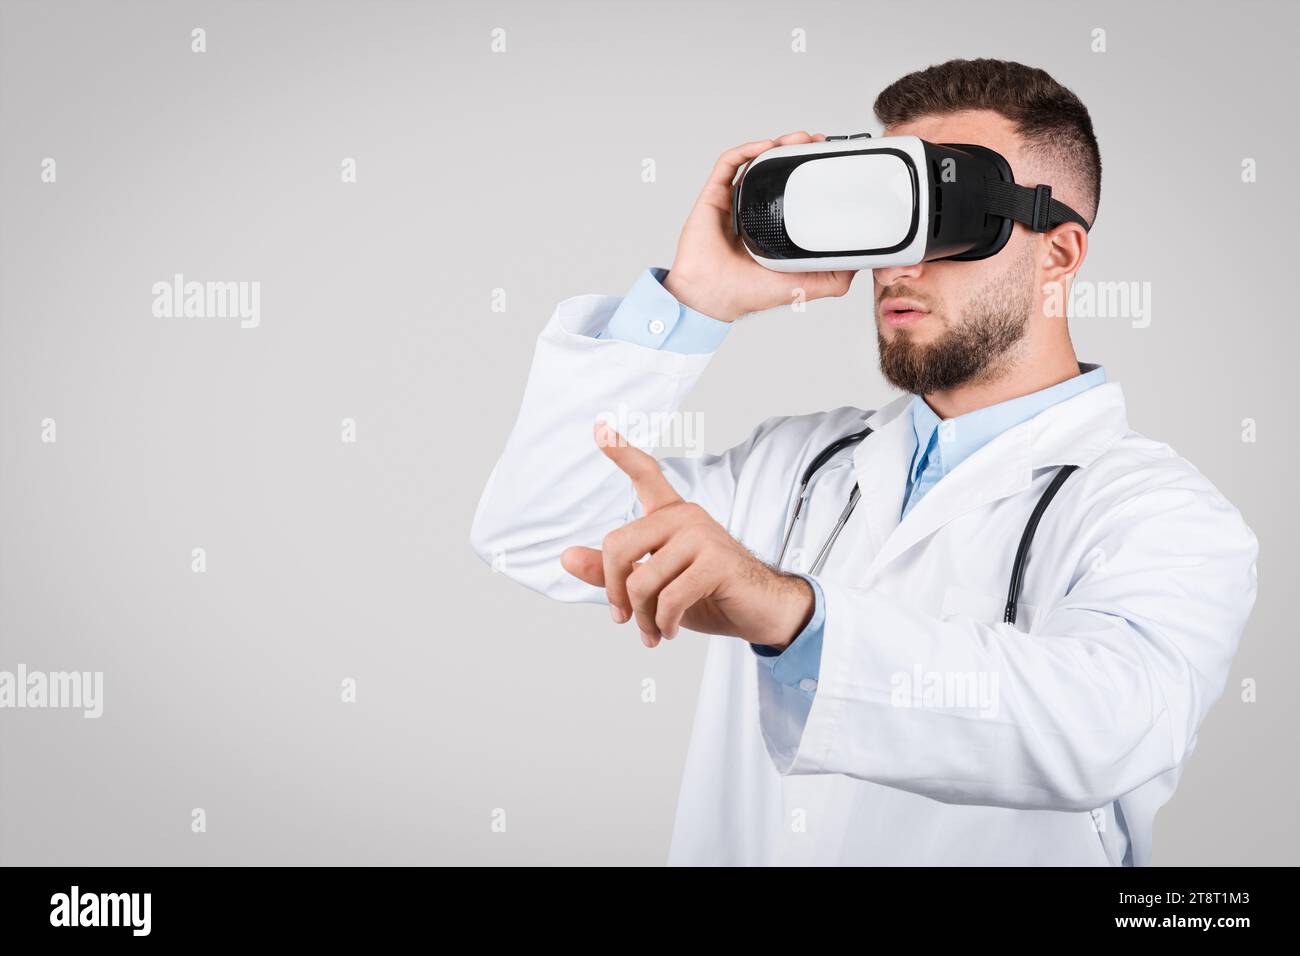 Junger männlicher Arzt im weißen Mantel mit VR-Brille, grauer Hintergrund Stockfoto